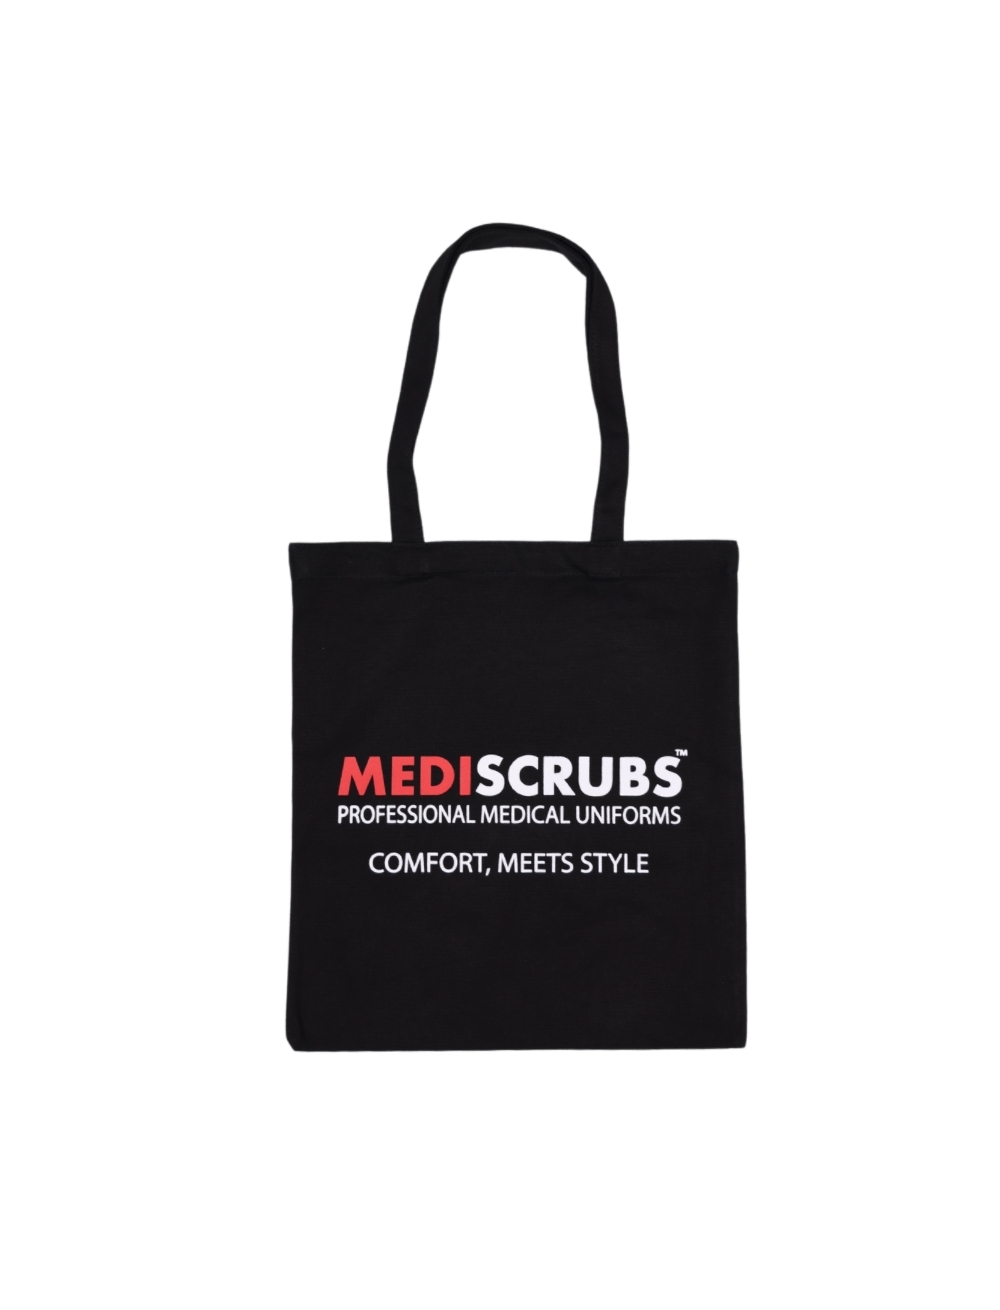 Mediscrubs Tote Bag